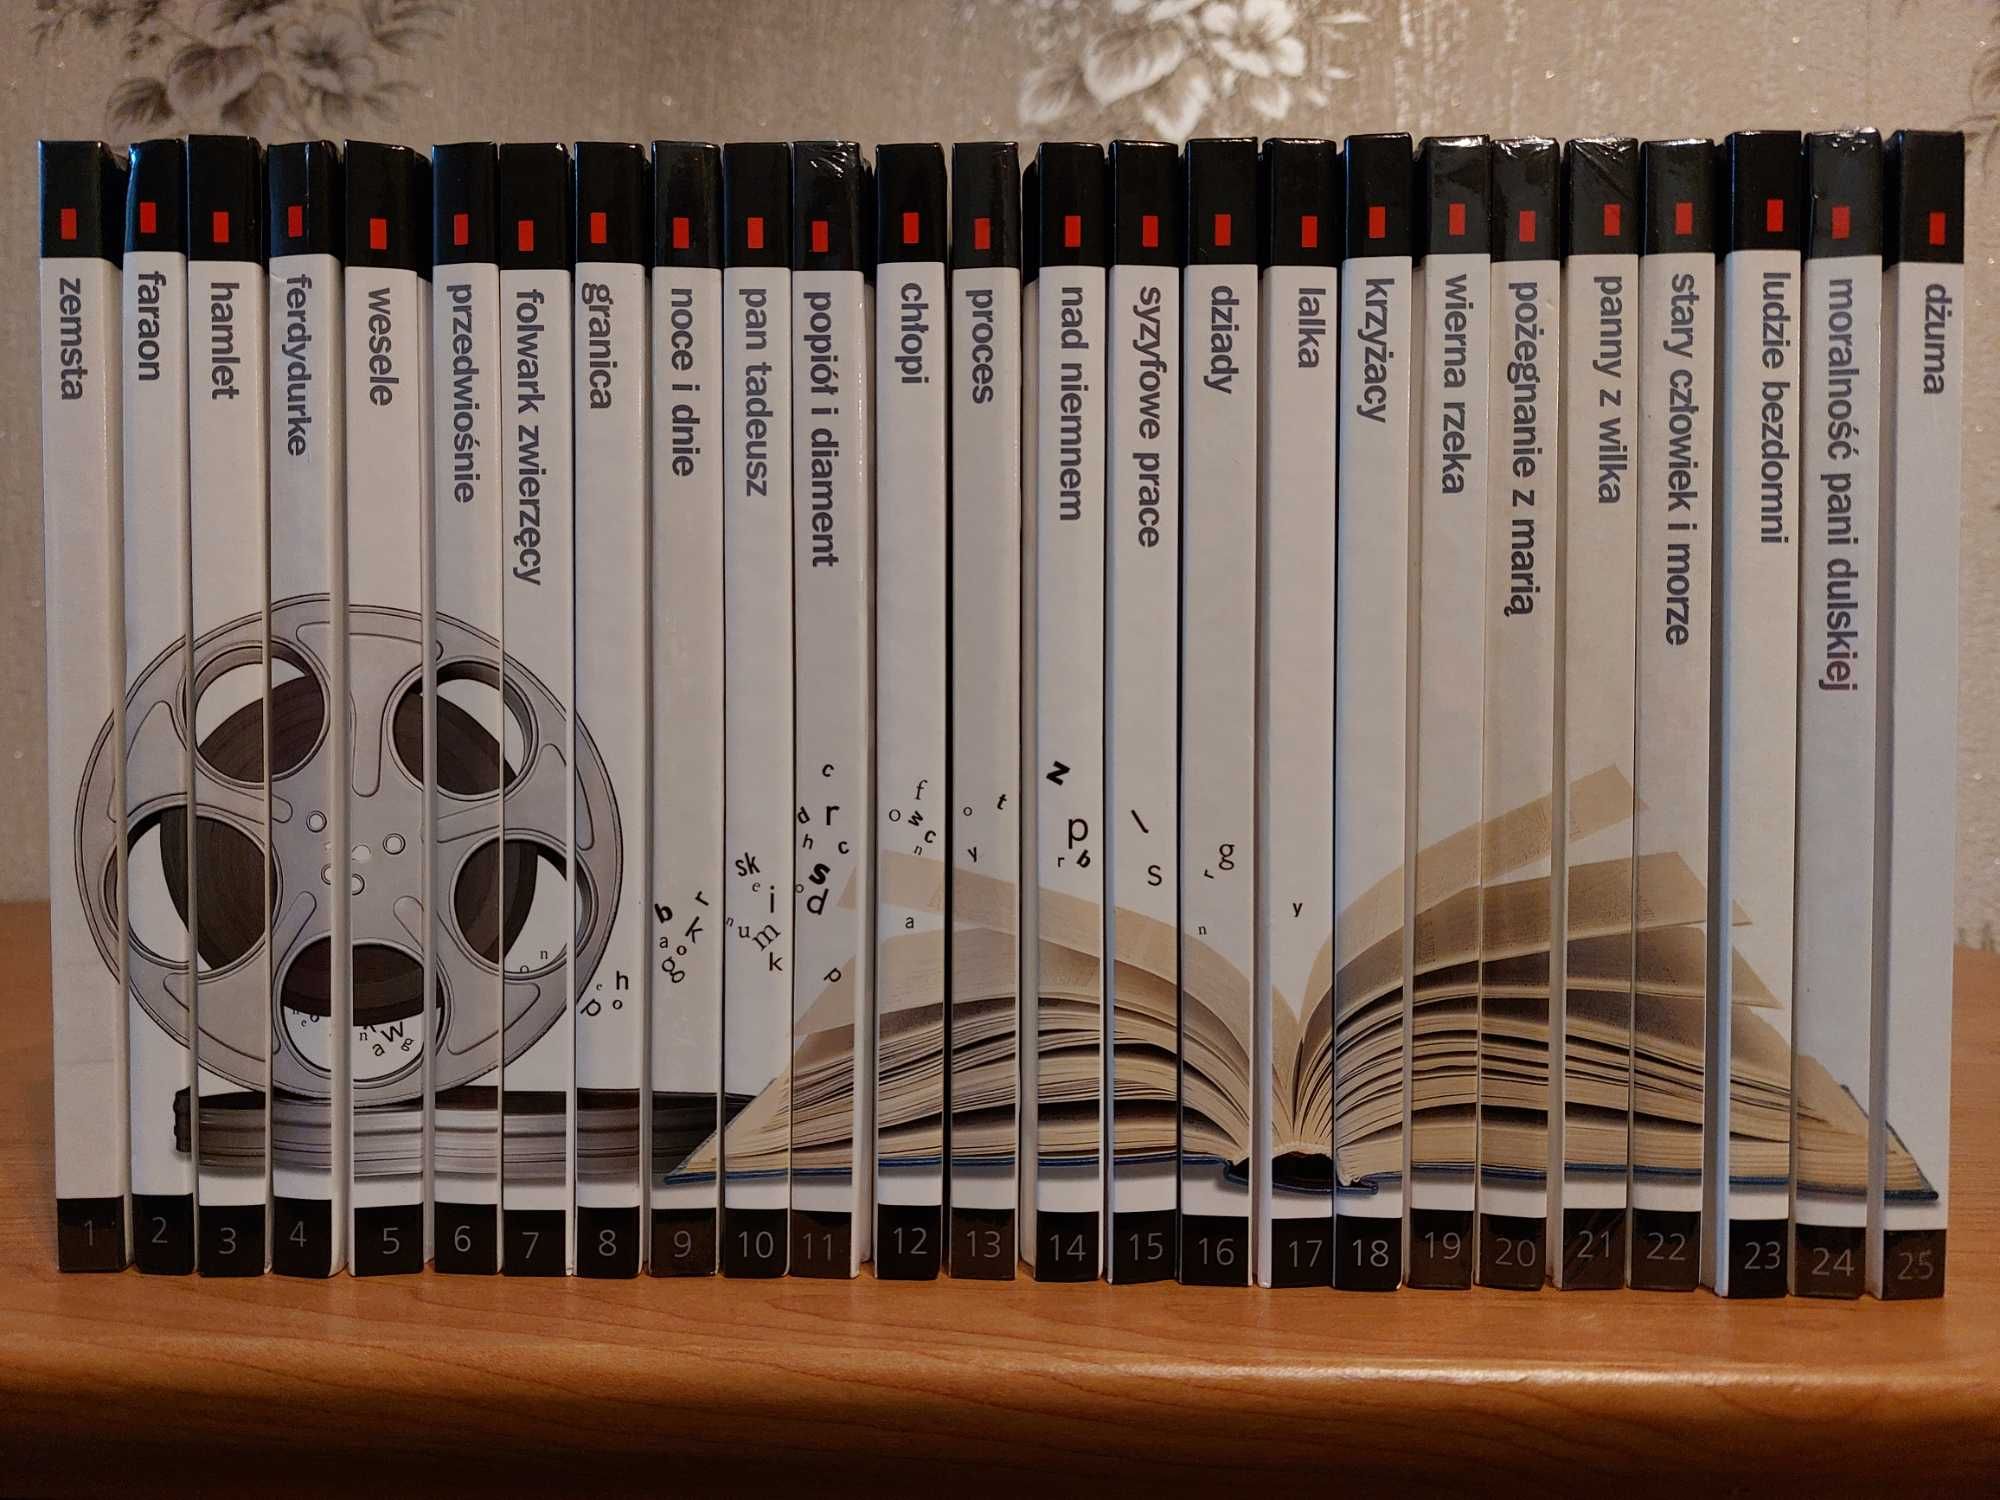 Kolekcja opracowań lektur szkolnych z filmami DVD